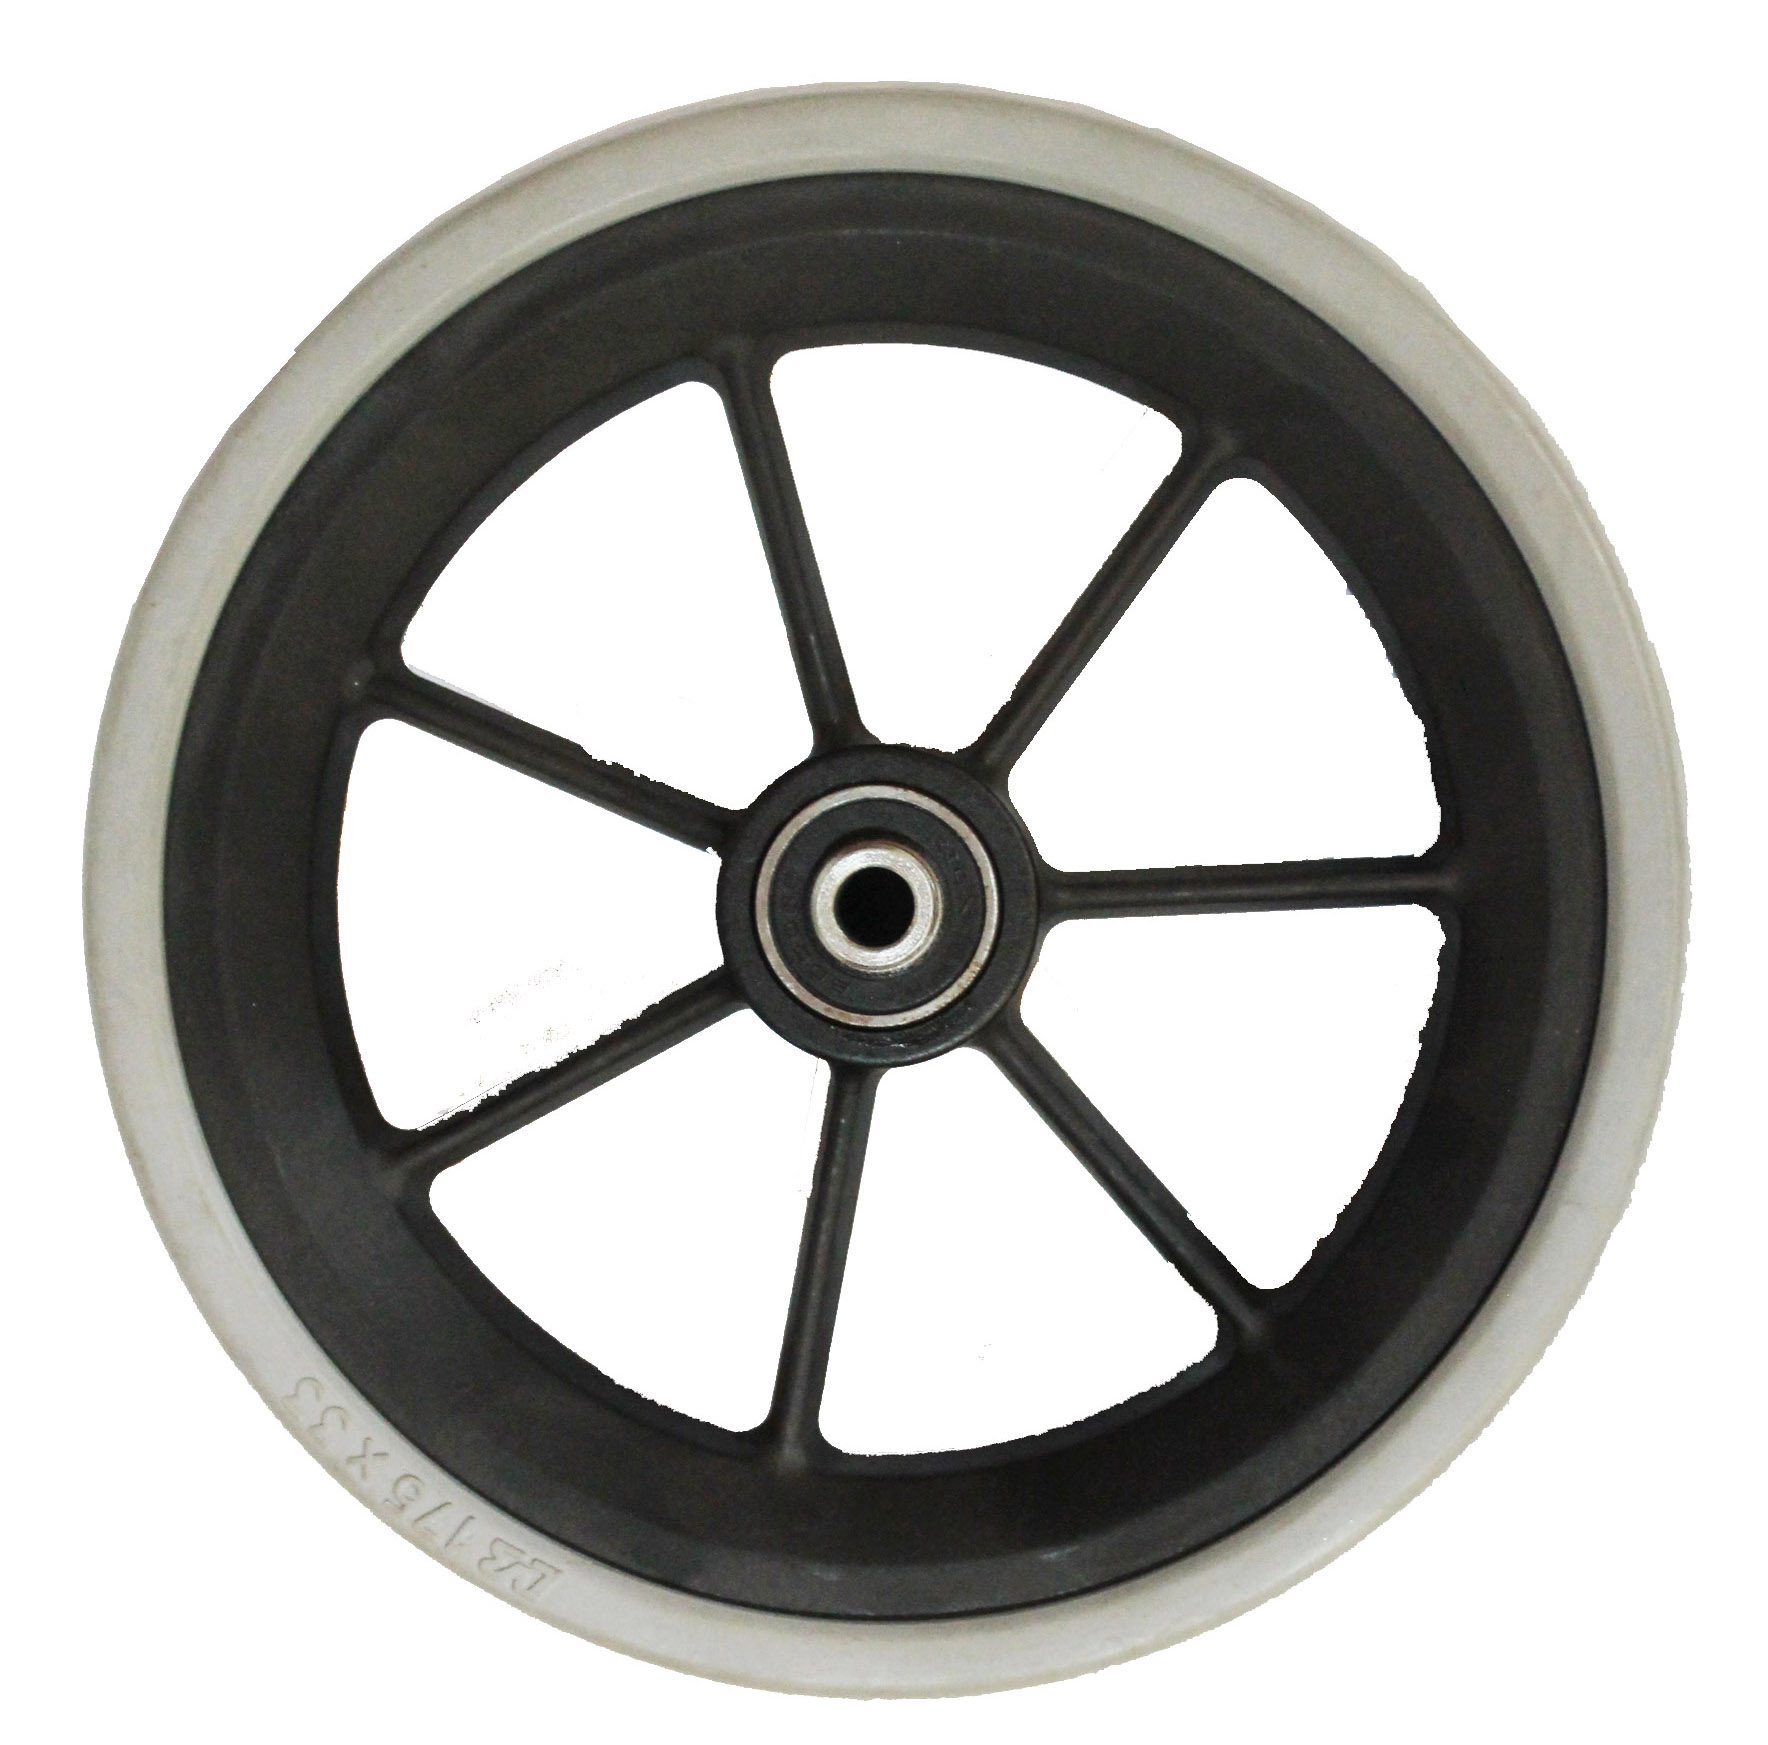 kleine Rolle wheel.shower Tür Kunststoffrolle wheel.wheel roller.guide Schiene Rollenrad